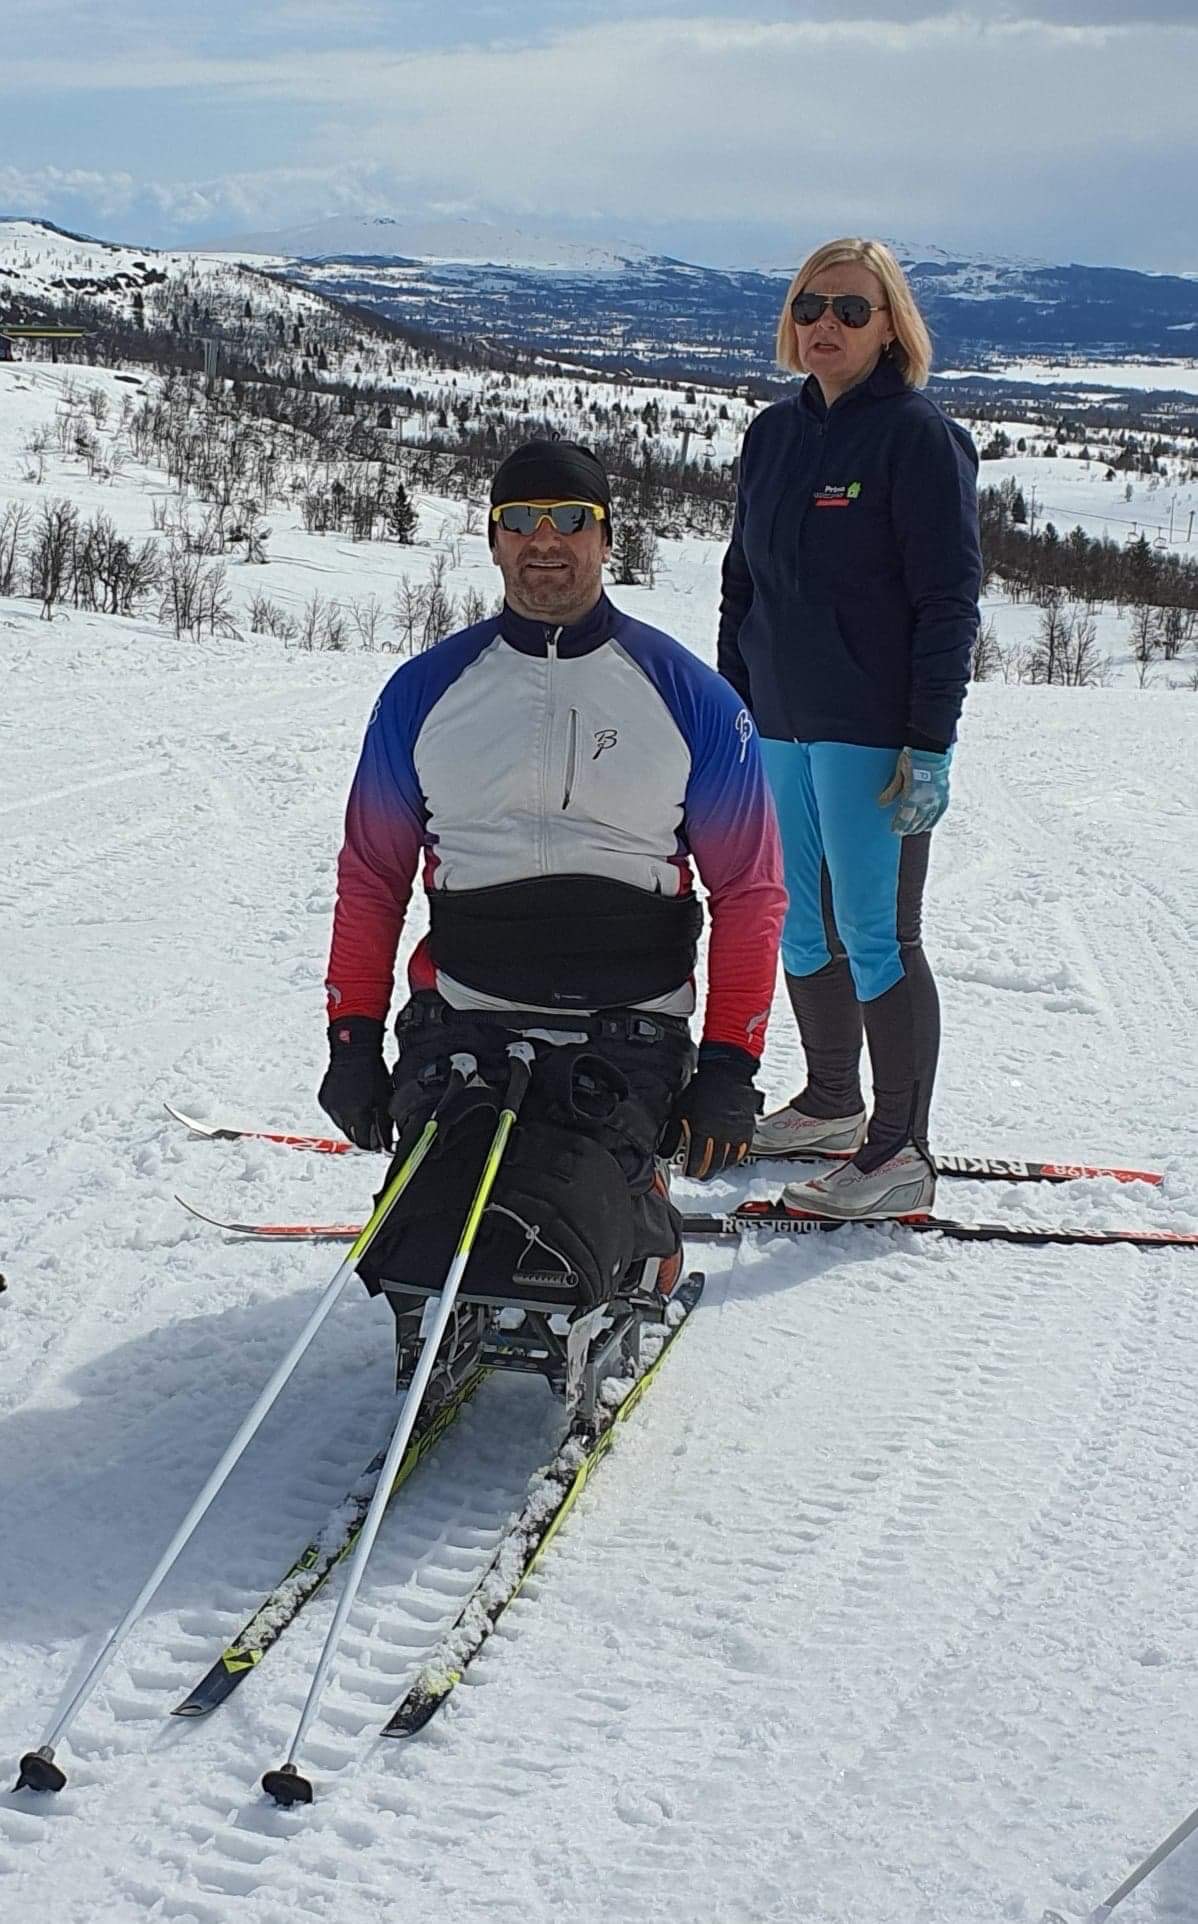 Vigdis og Shaqir på ski. Vigdis har på seg azurblå bukser og mørkeblå hettegenser. Shaqir har på seg en hvit, blå og rød skijakke. Begge har på solbriller. Snøkledde åser i bakgrunnen.